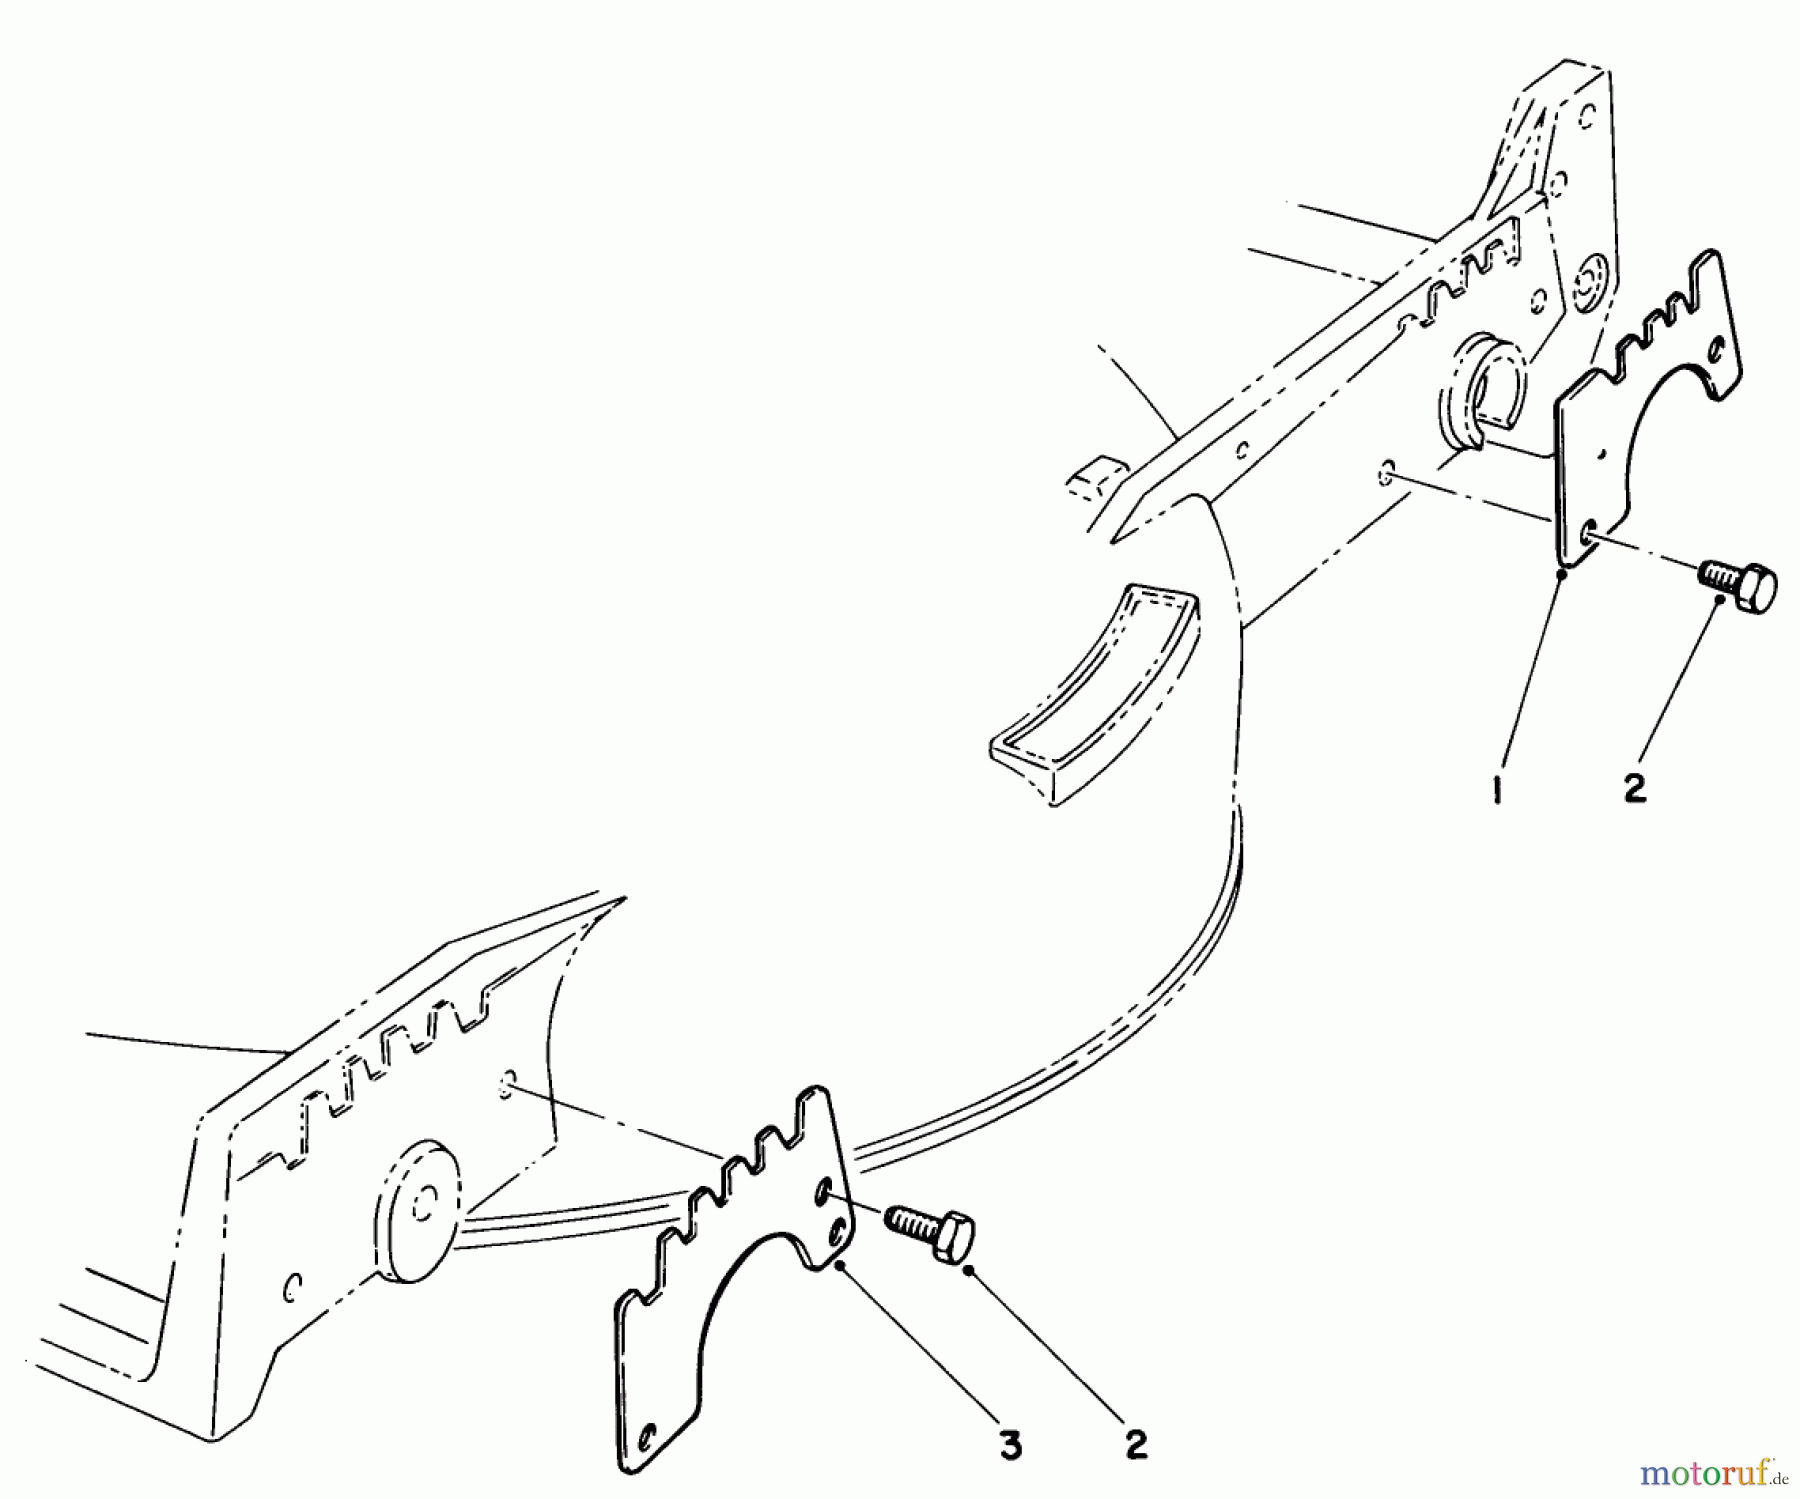  Toro Neu Mowers, Walk-Behind Seite 1 20718 - Toro Lawnmower, 1985 (5000001-5999999) WEAR PLATE KIT NO. 49-4080 (OPTIONAL)